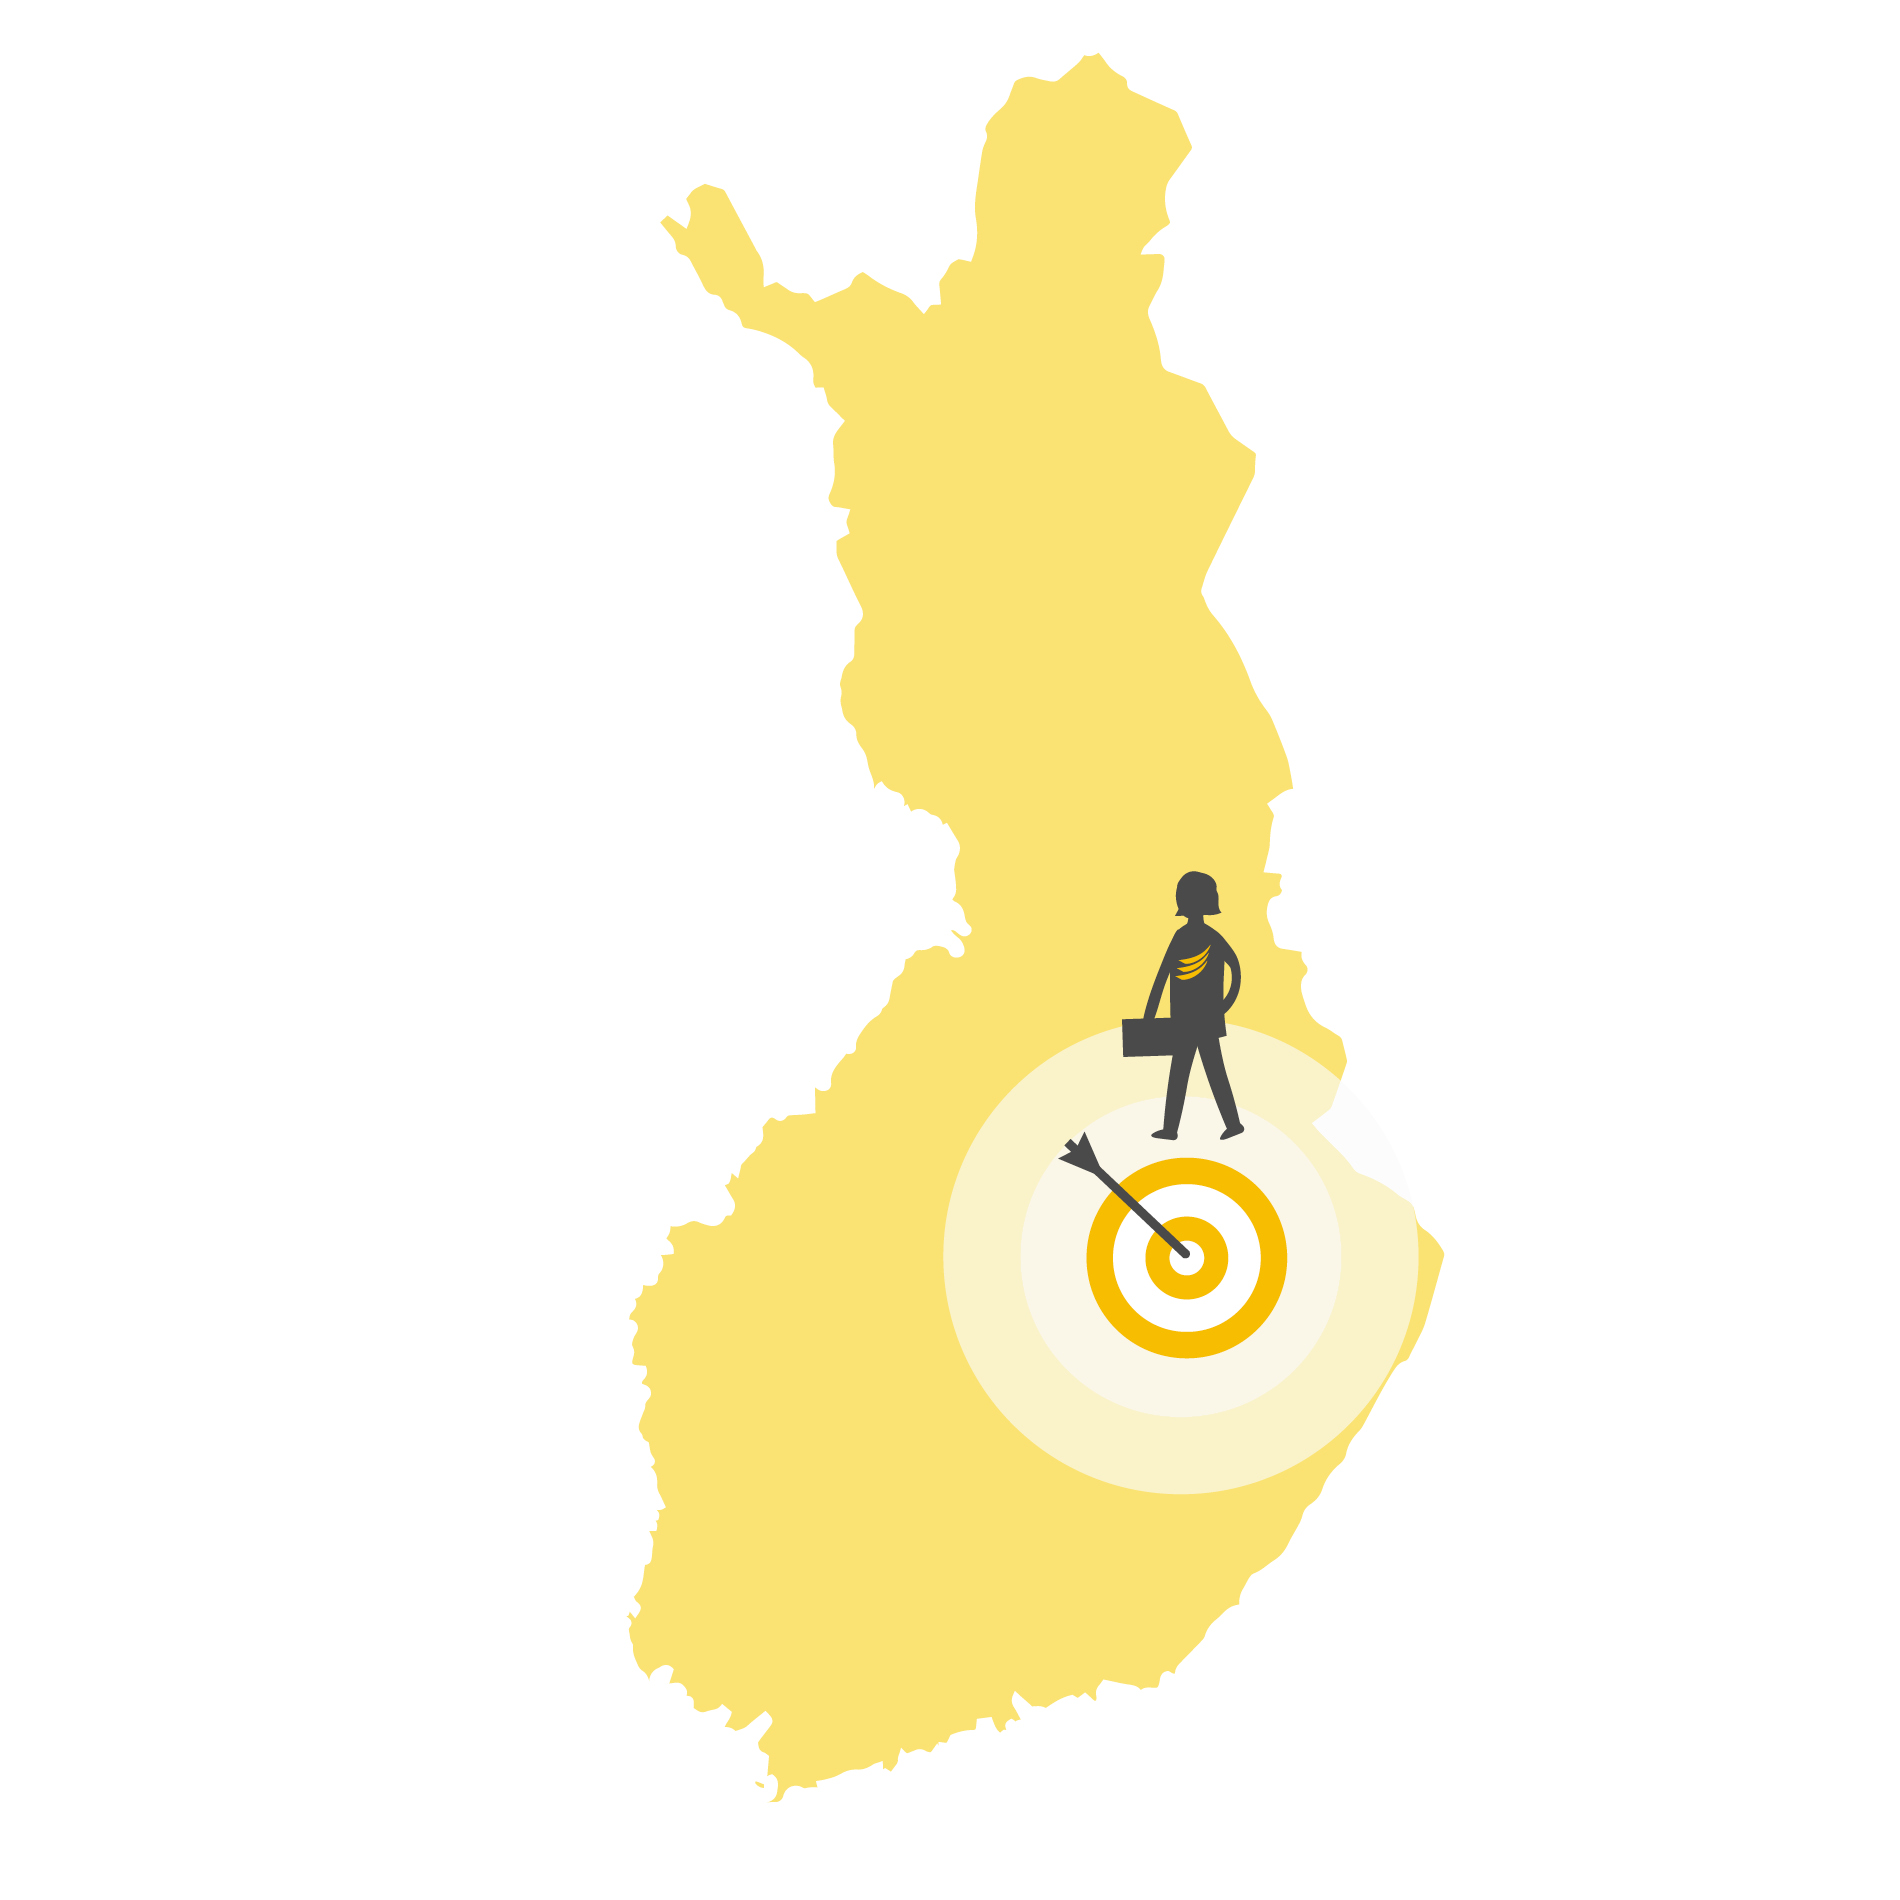 Piirroskuva, jossa on Suomen kartta ja Pohjois-Savon kohdalla nuoli ja ihminen.